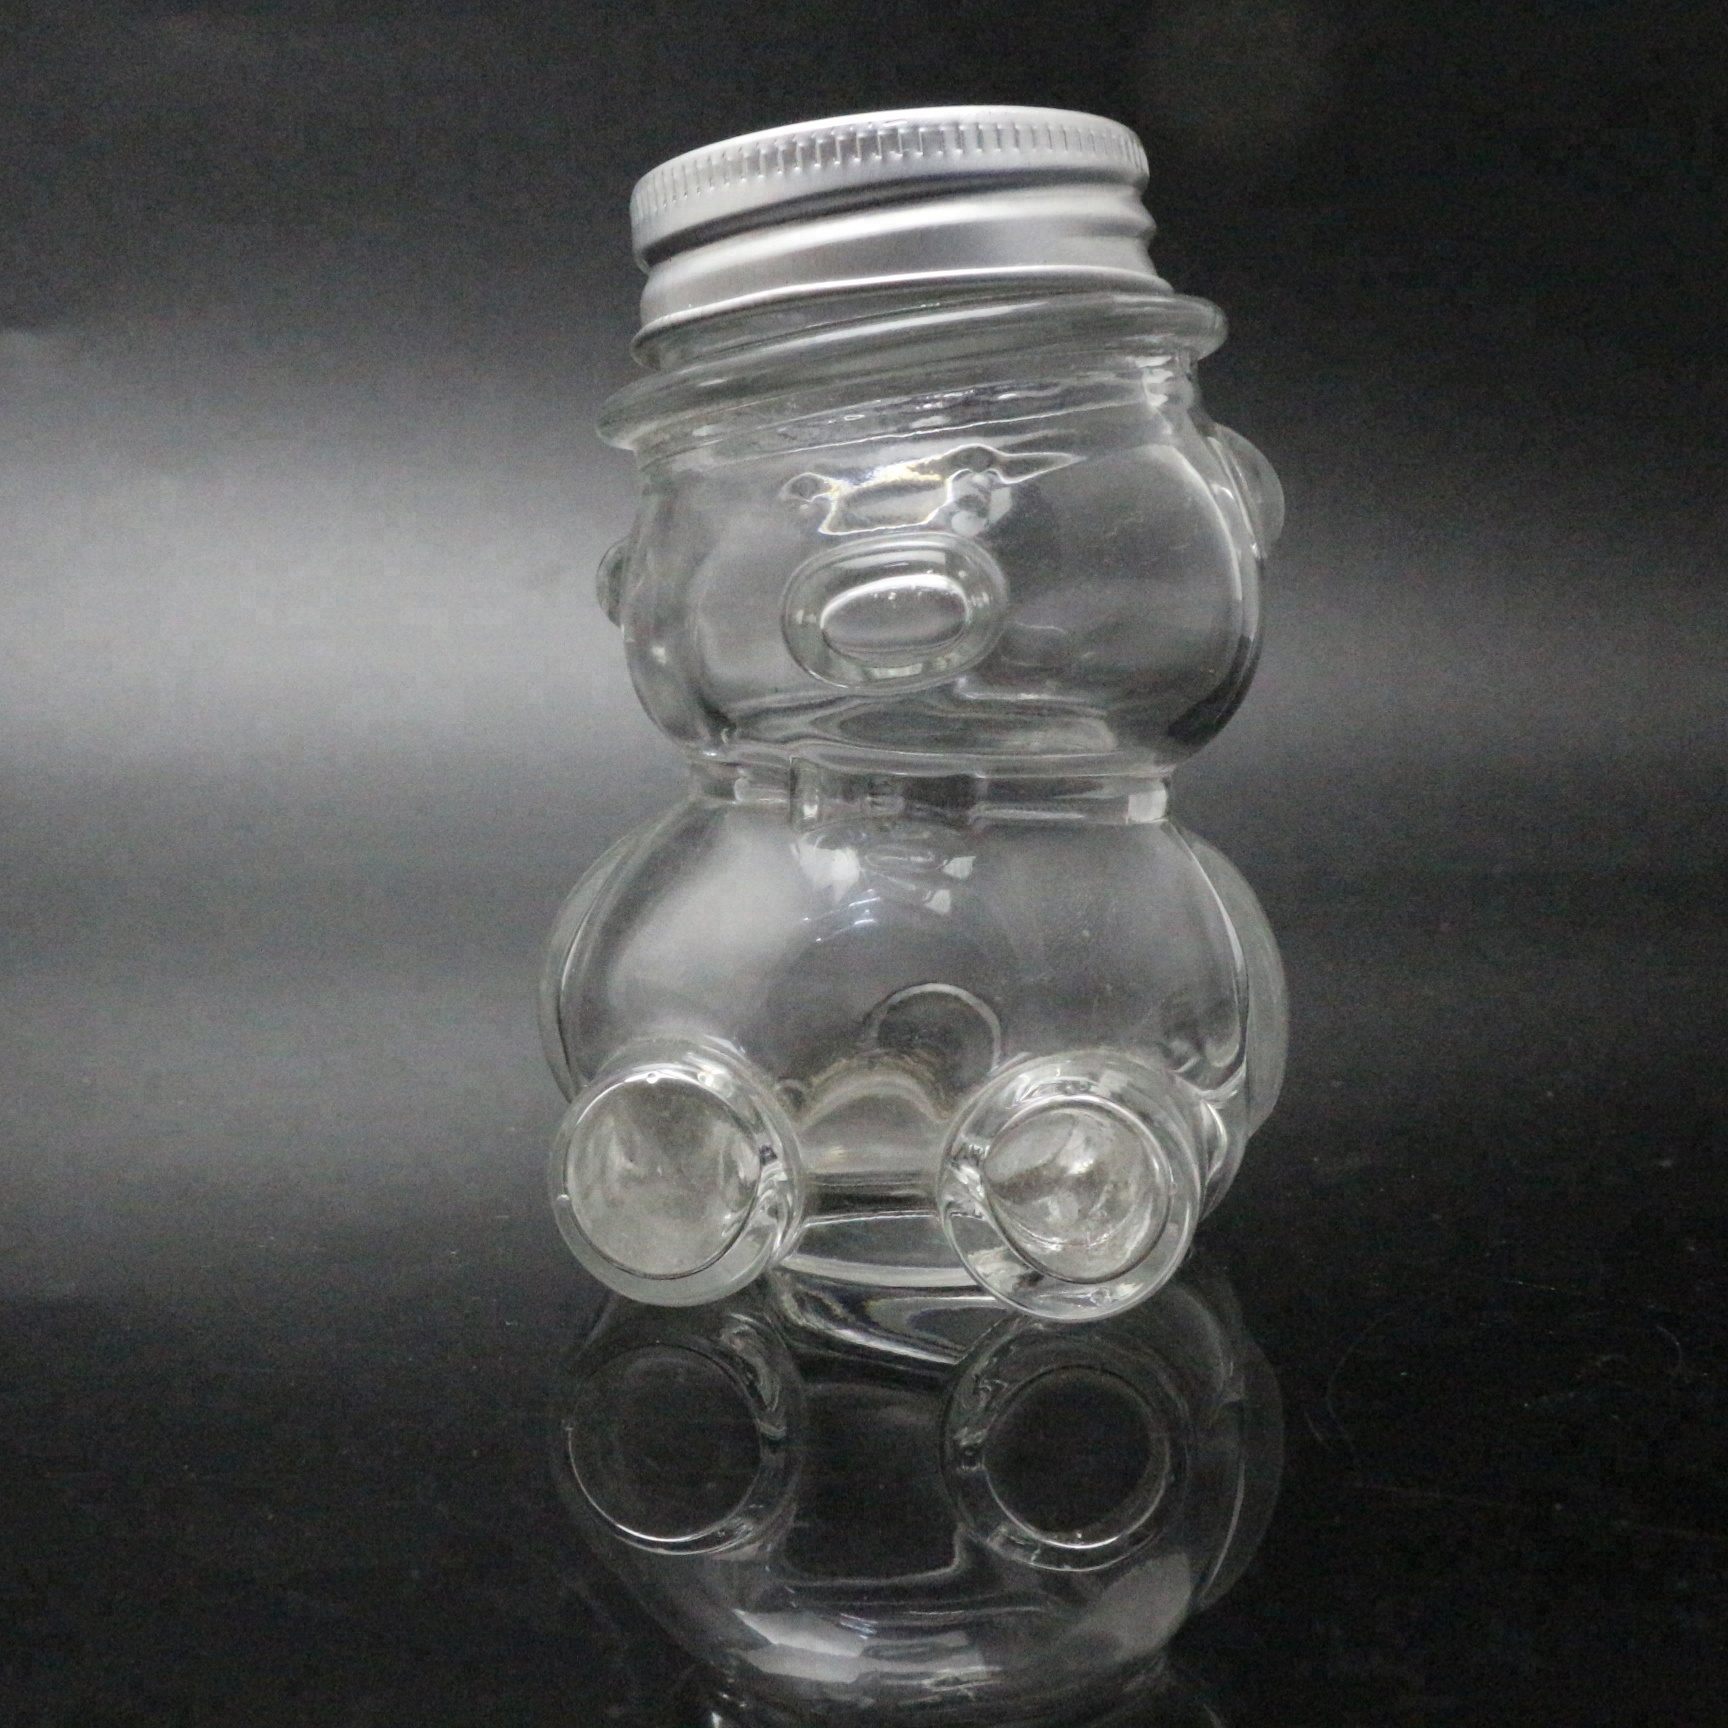 Premium Vials 9 zécken Glass Bear Jar Fir Honey favoriséiert No Silver Lids